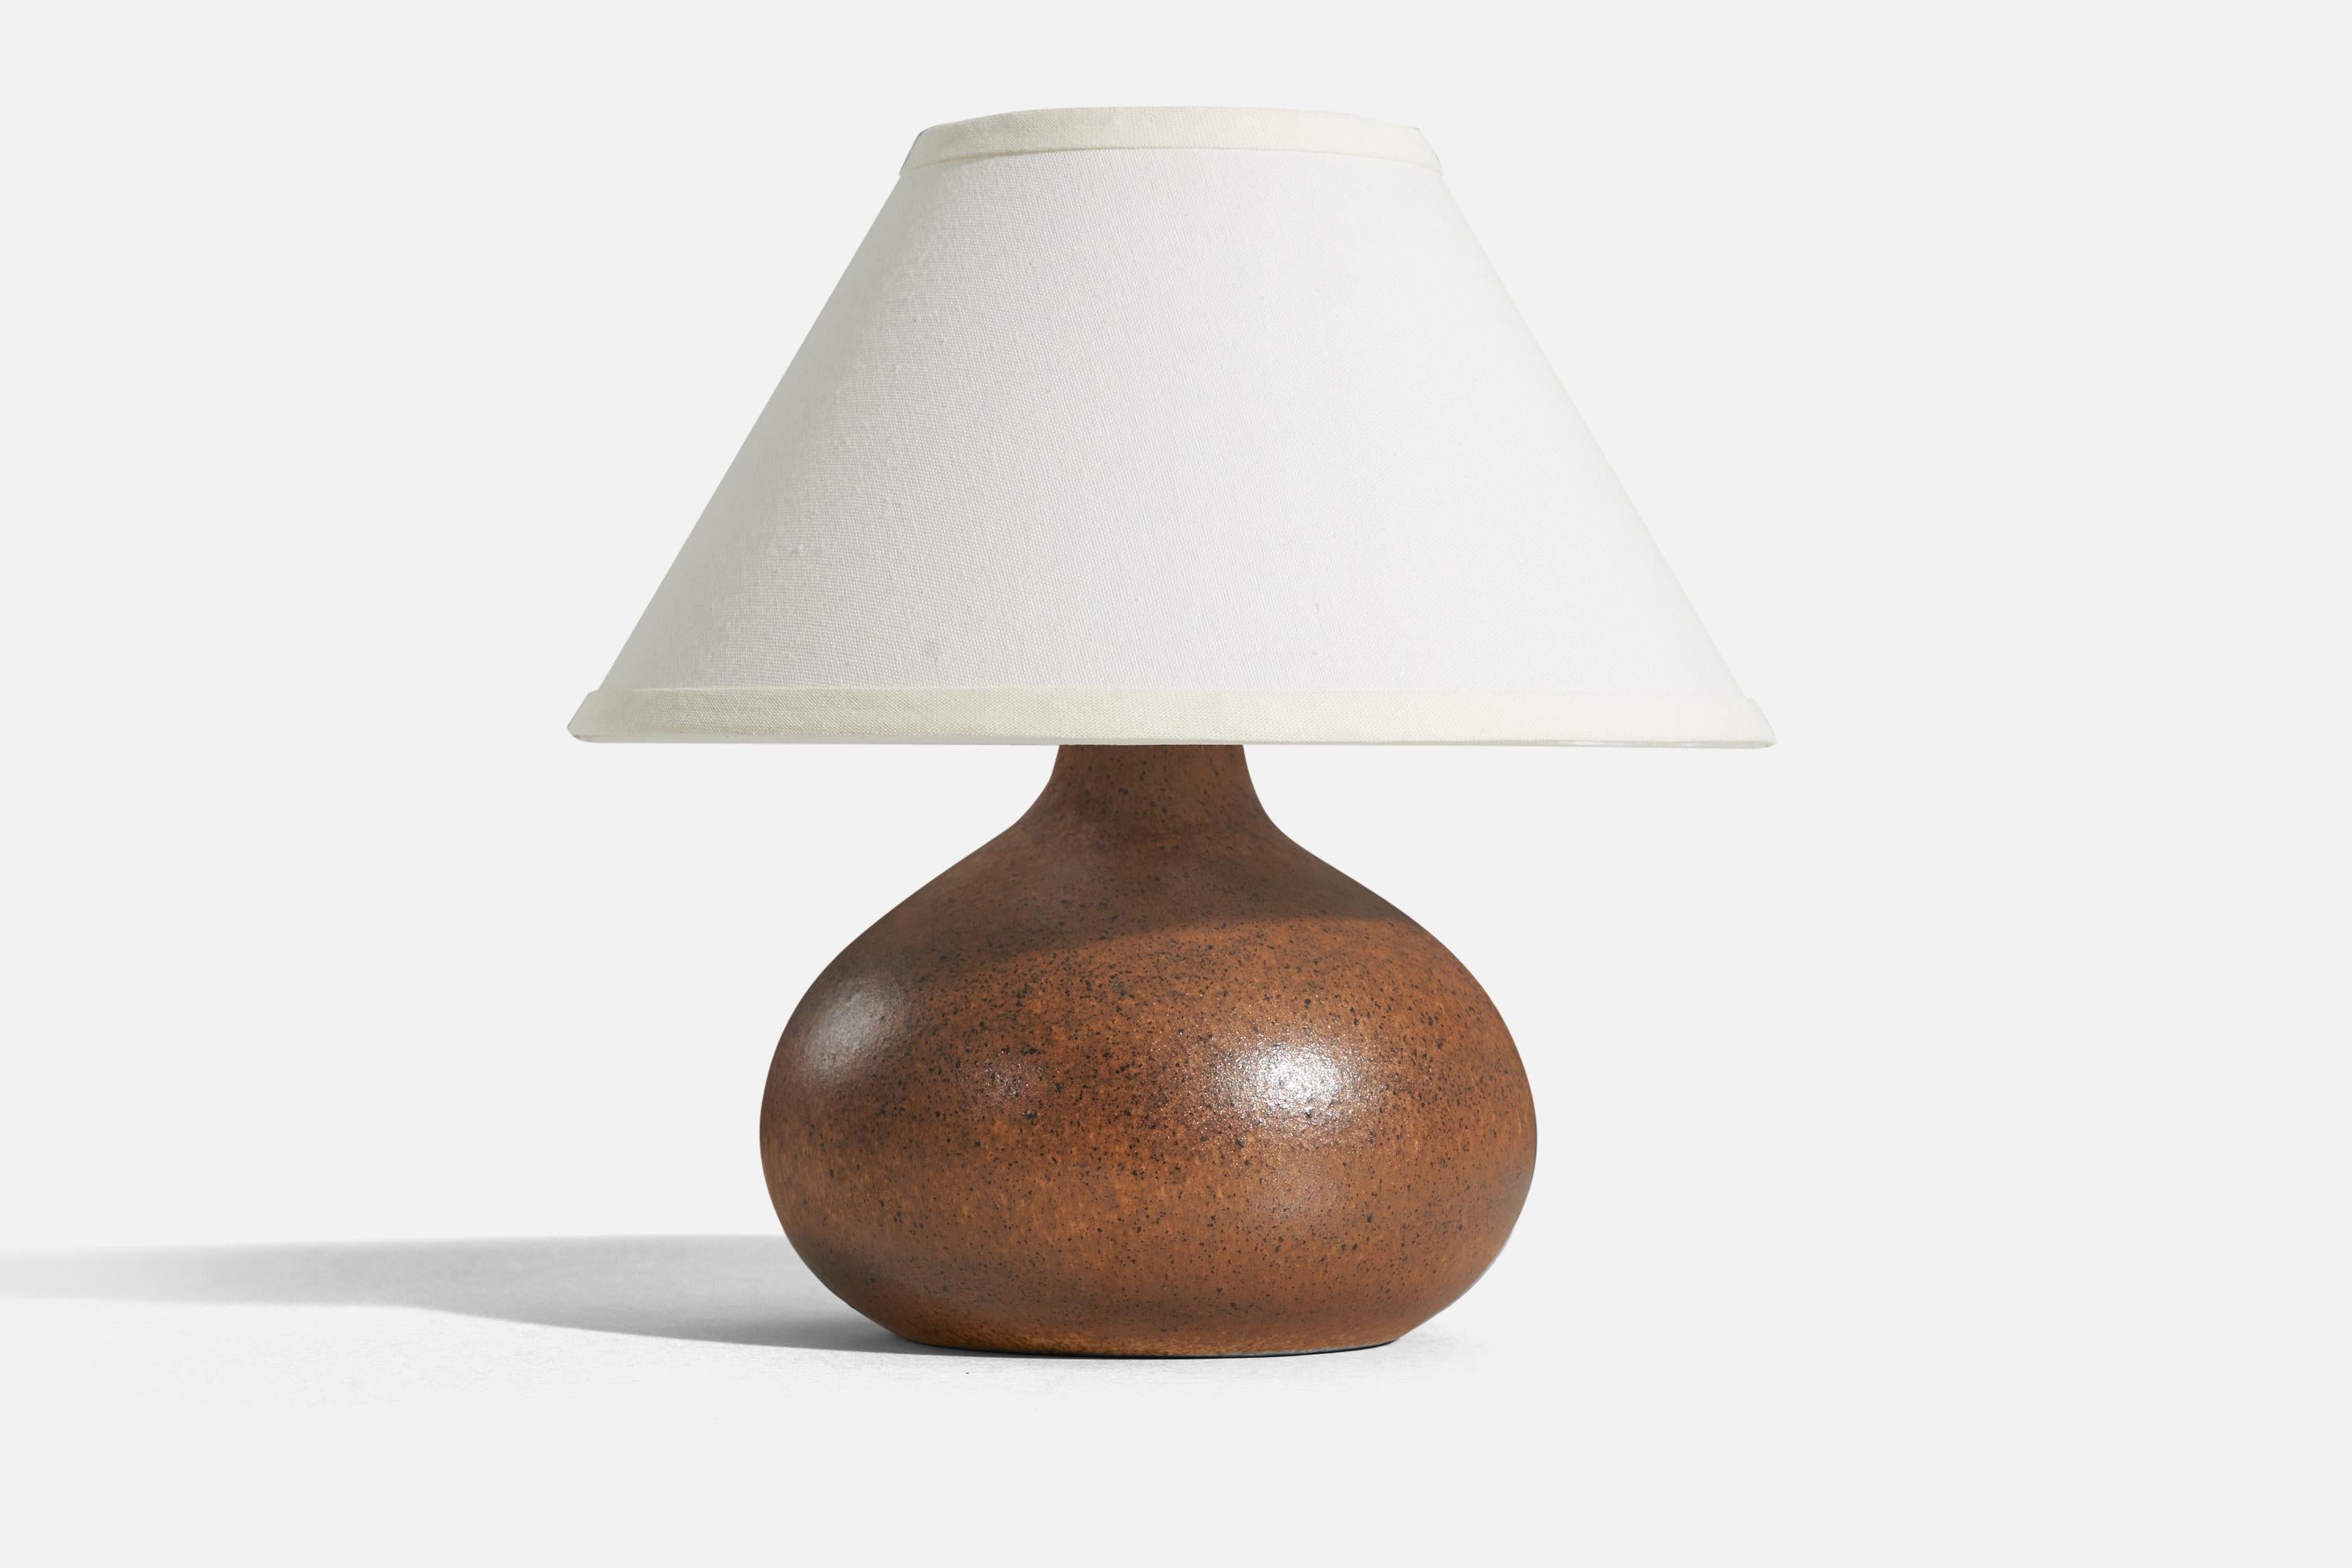 Lampe de table en grès émaillé brun, conçue par Bruno Karlsson et produite par Ego Stengods, Suède, C.I.C.. Il est estampillé et signé sur le dessous.

Vendu sans abat-jour. 
Dimensions de la lampe (pouces) : 9 x 7,5 x 7,5 (H x L x P)
Dimensions